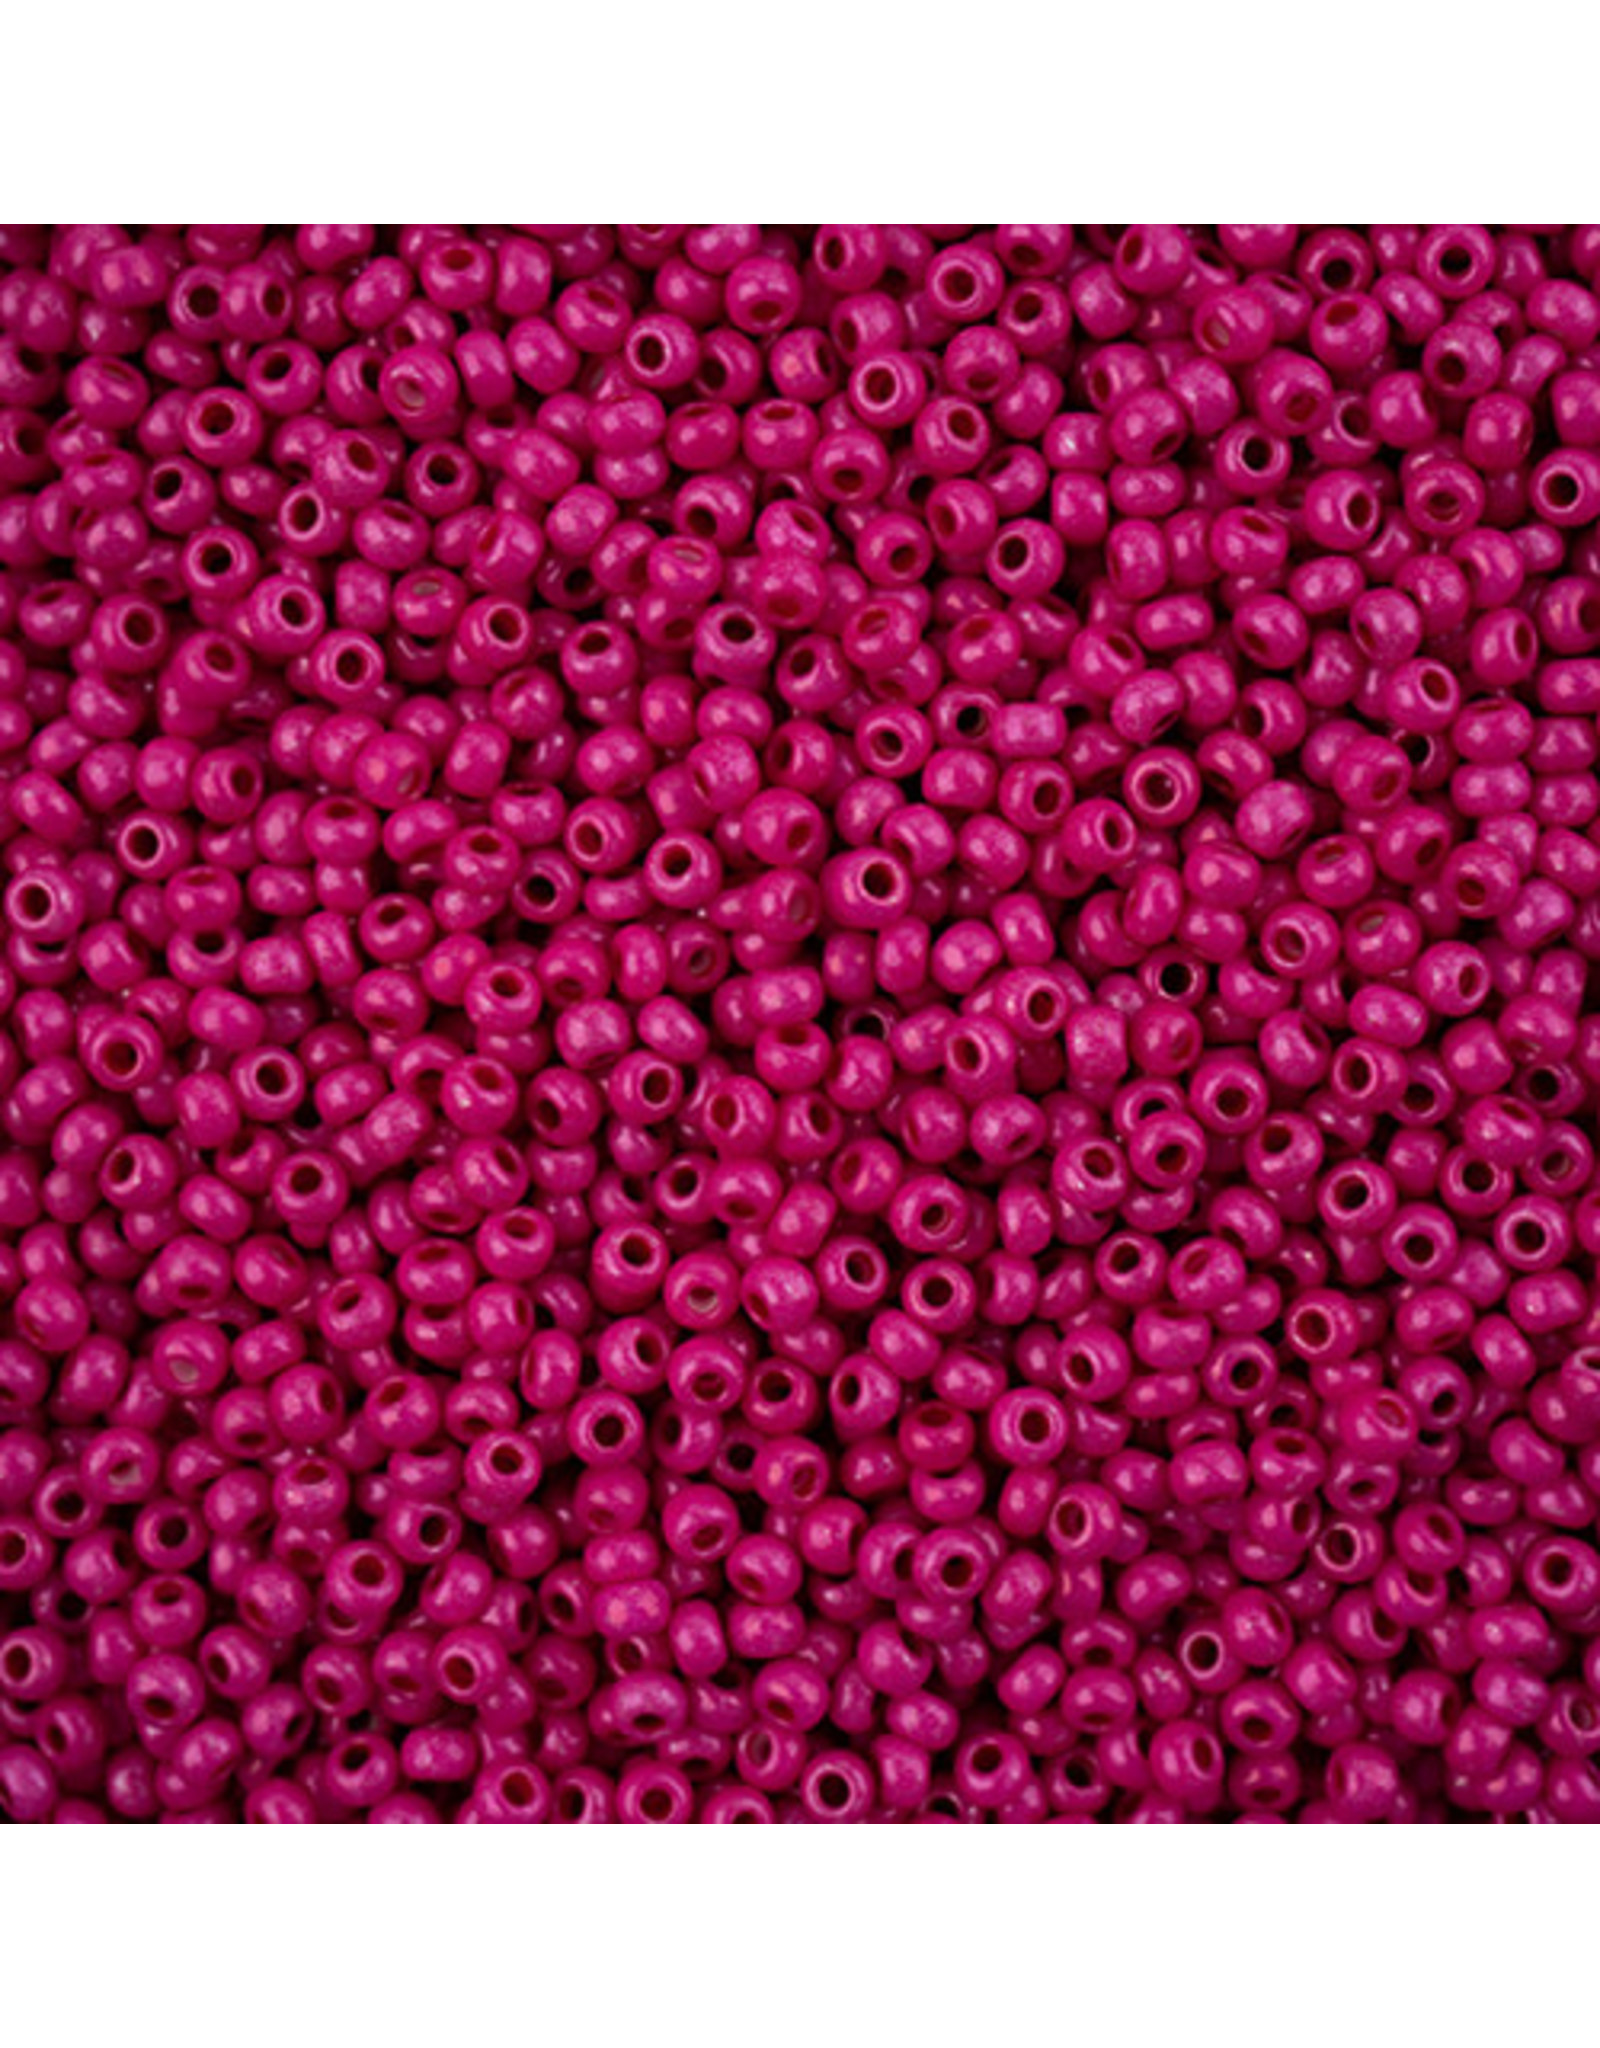 Czech *243114 8 Seed 10g Opaque Pink Terra Intensive